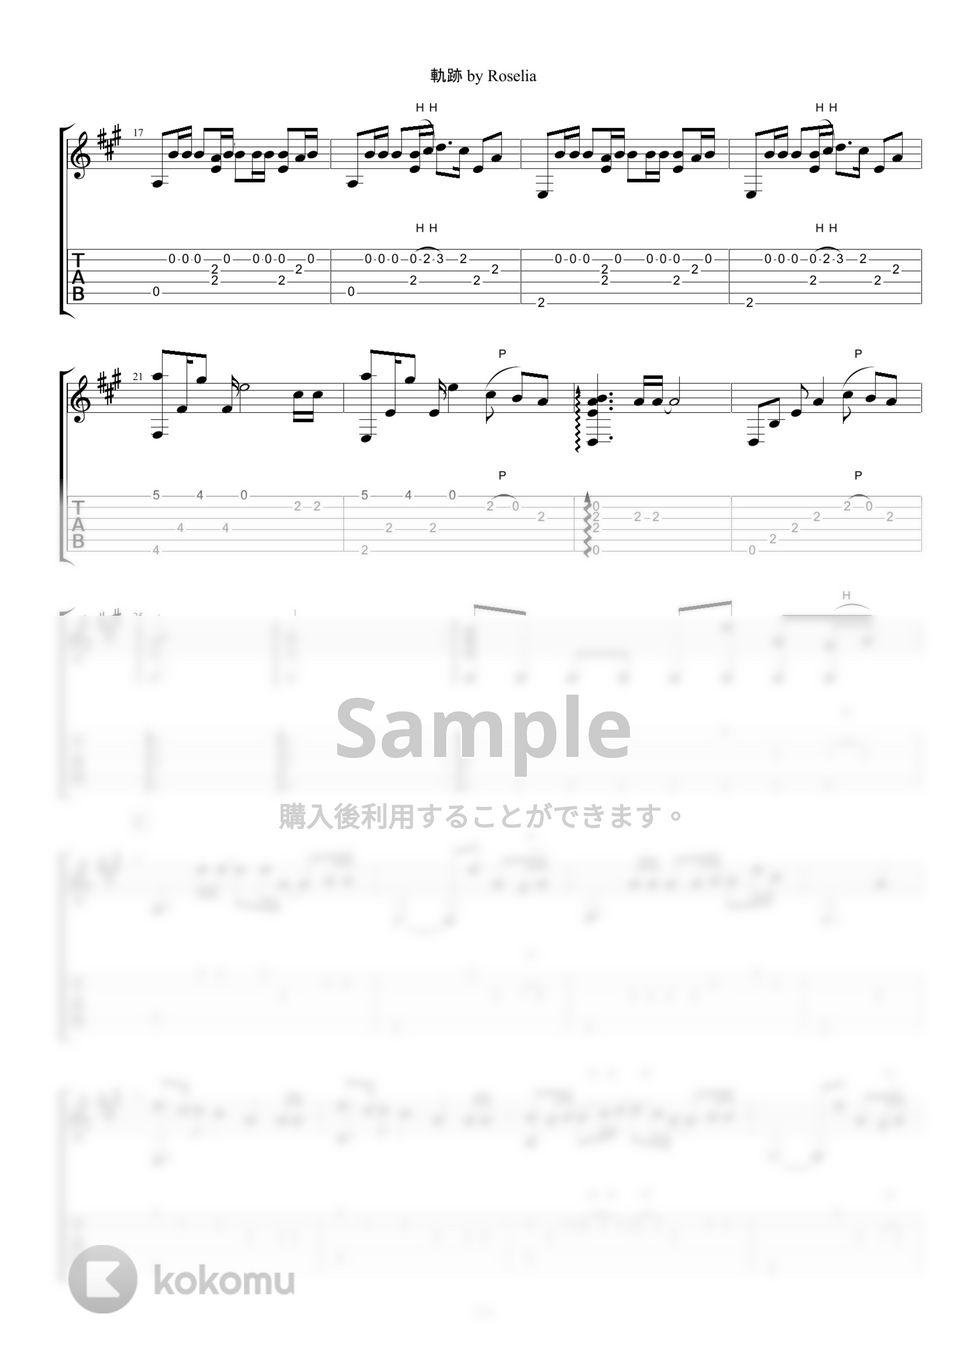 BanG Dream! - 軌跡 (ソロギターアレンジ) by ぎたーきたー